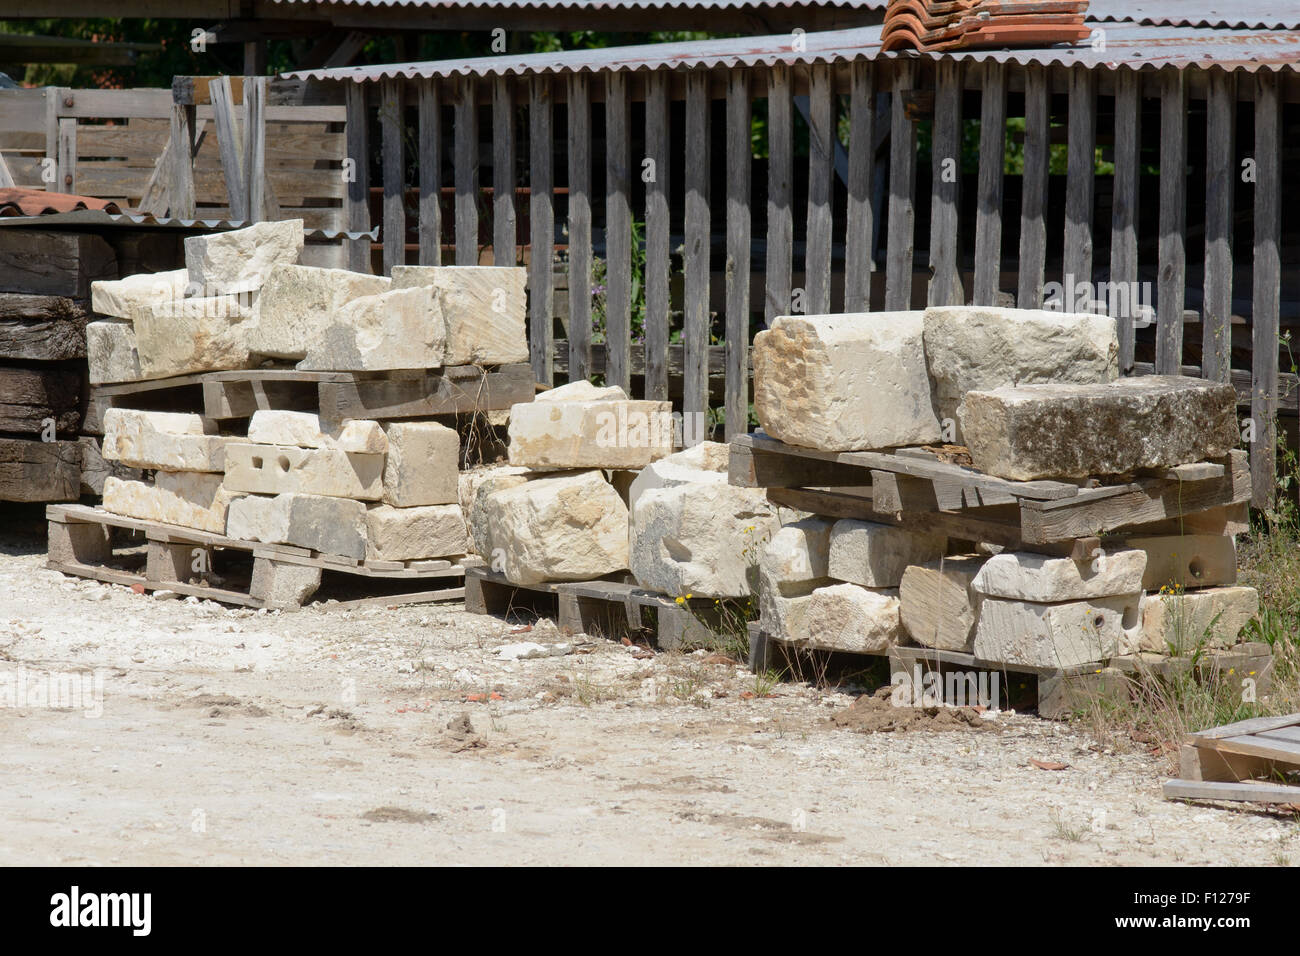 Les grosses pierres empilées en tas pour être utilisé pour construire maison à St Thomas de Conac, région des Charentes, France Banque D'Images